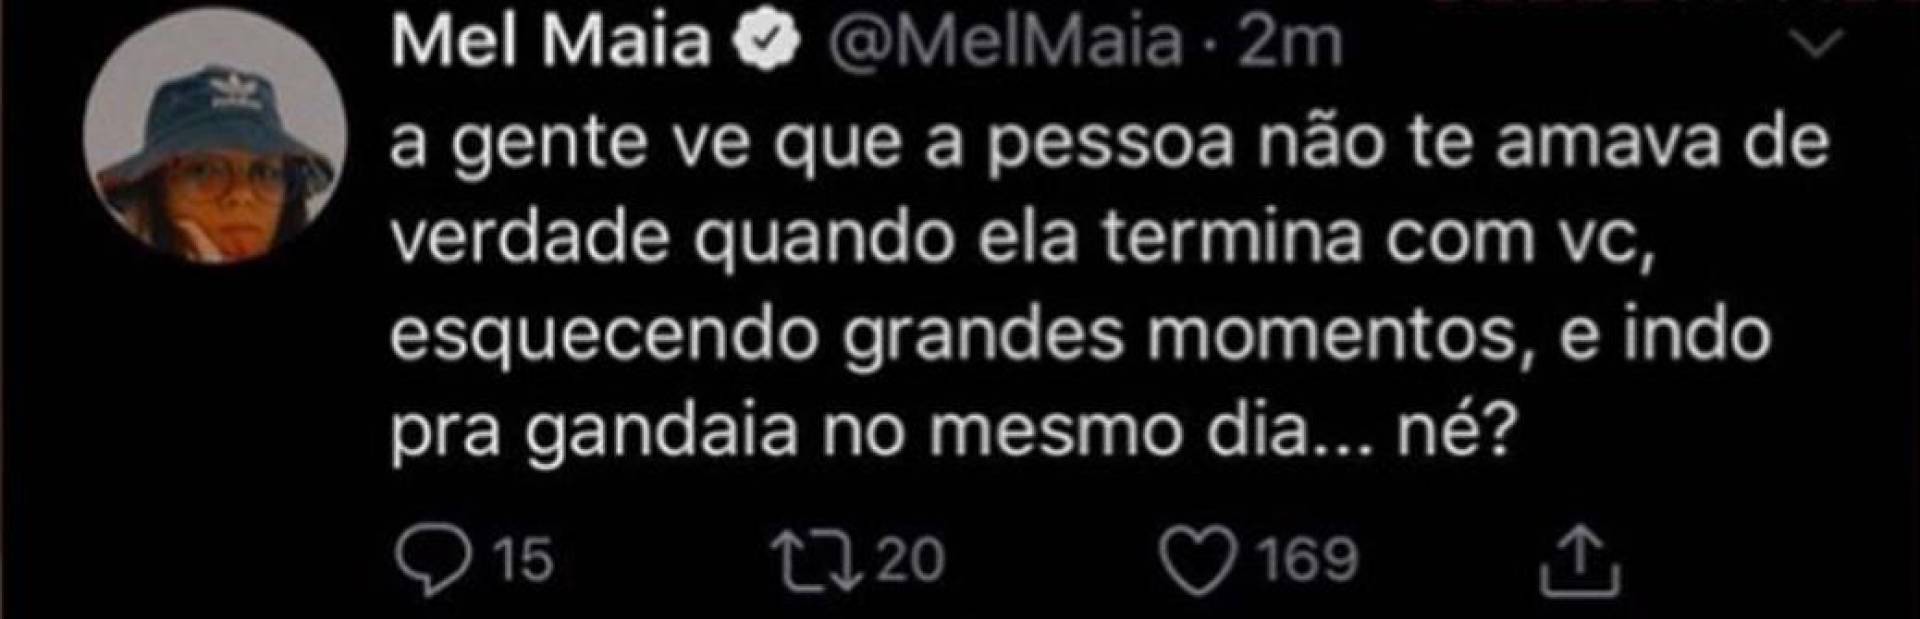 Mel Maia anunciou que foi João Pedro quem terminou tudo (Foto: Reprodução Twitter)